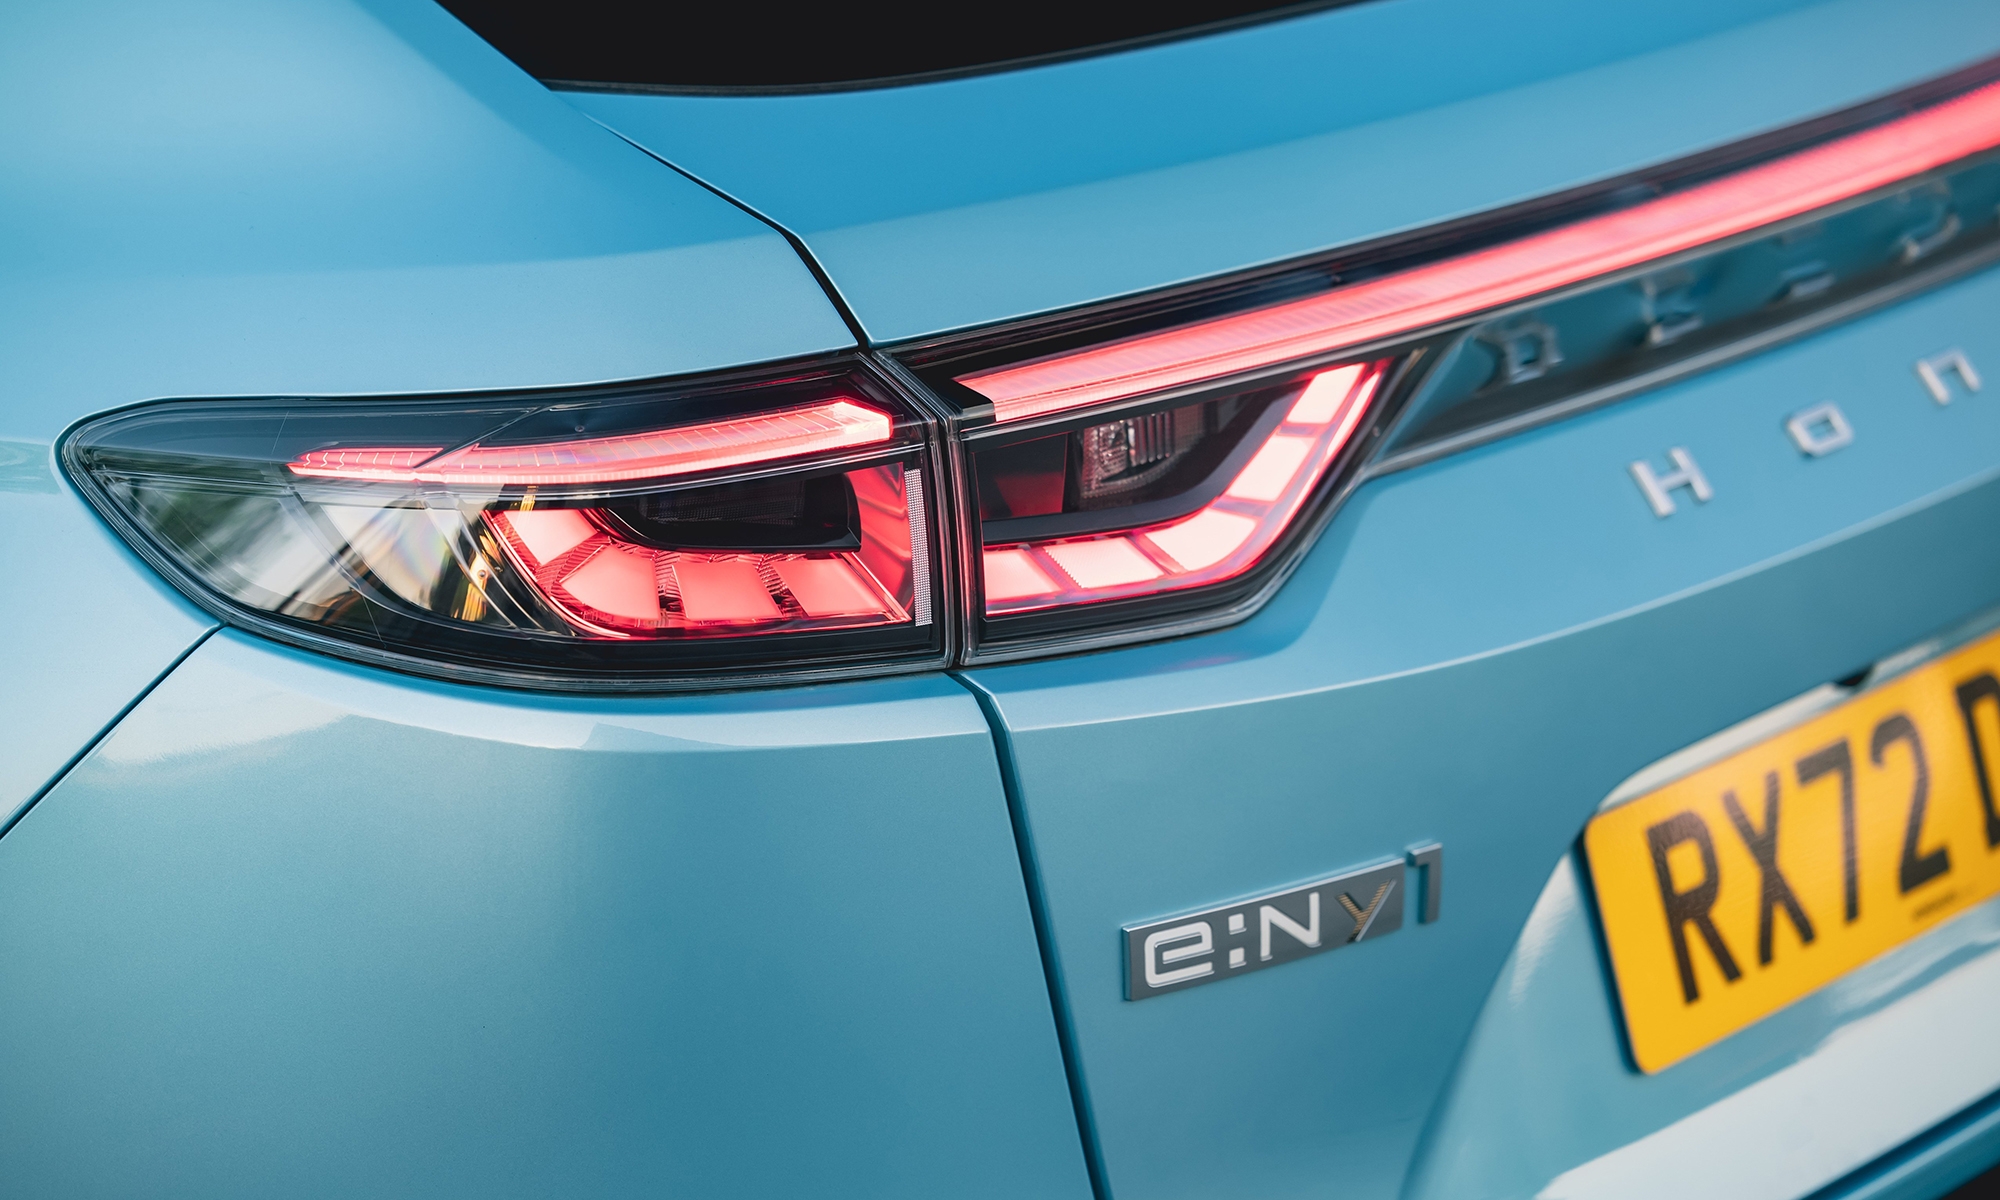 La denominación del Honda e:Ny1 podría tener los días contados gracias a la nueva gama de modelos eléctricos chinos.